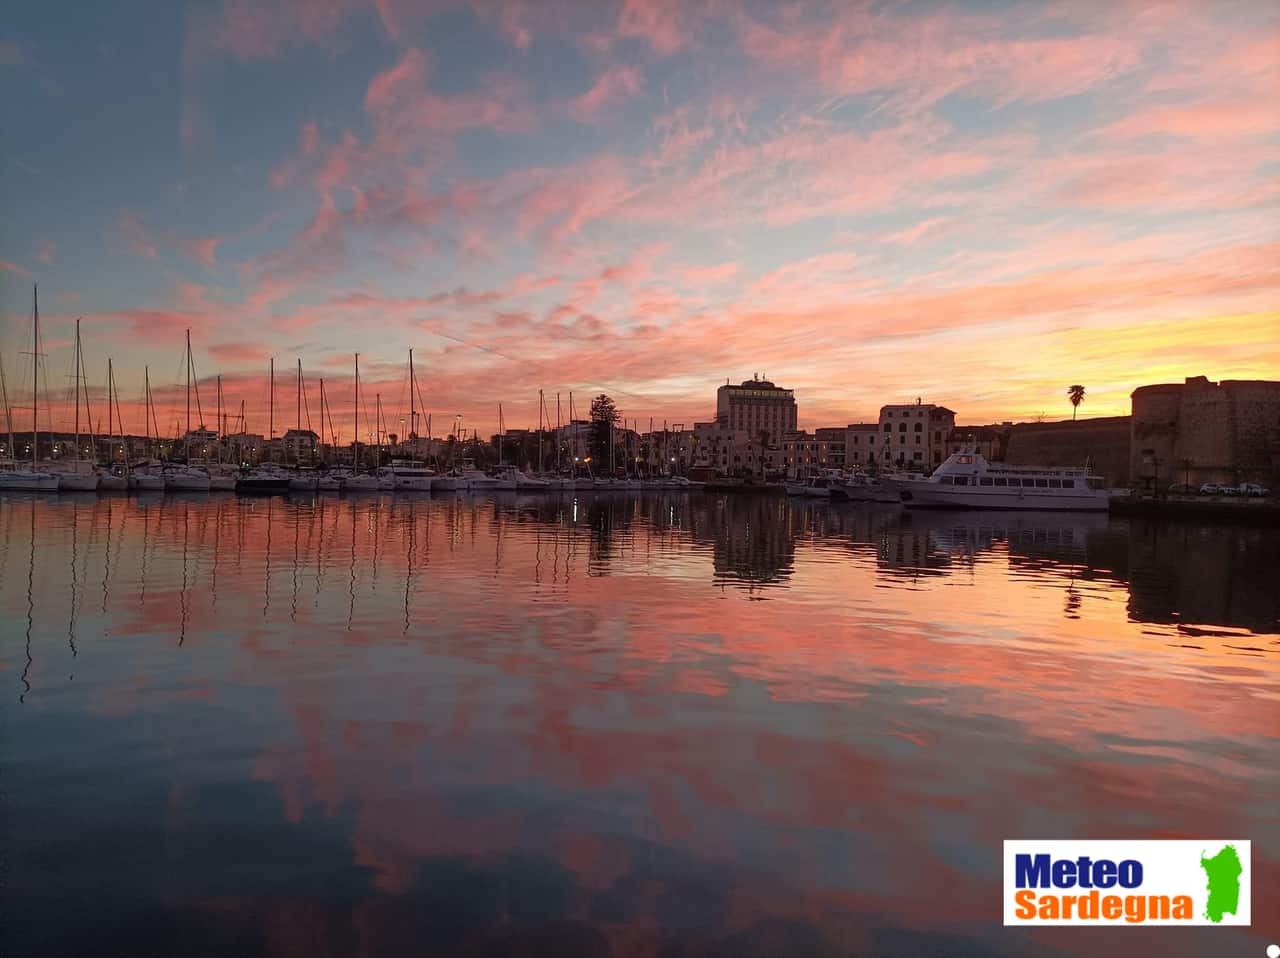 2022 02 19 11.37.31 - Meteo Sardegna e Alghero. Video e foto del nuovo giorno